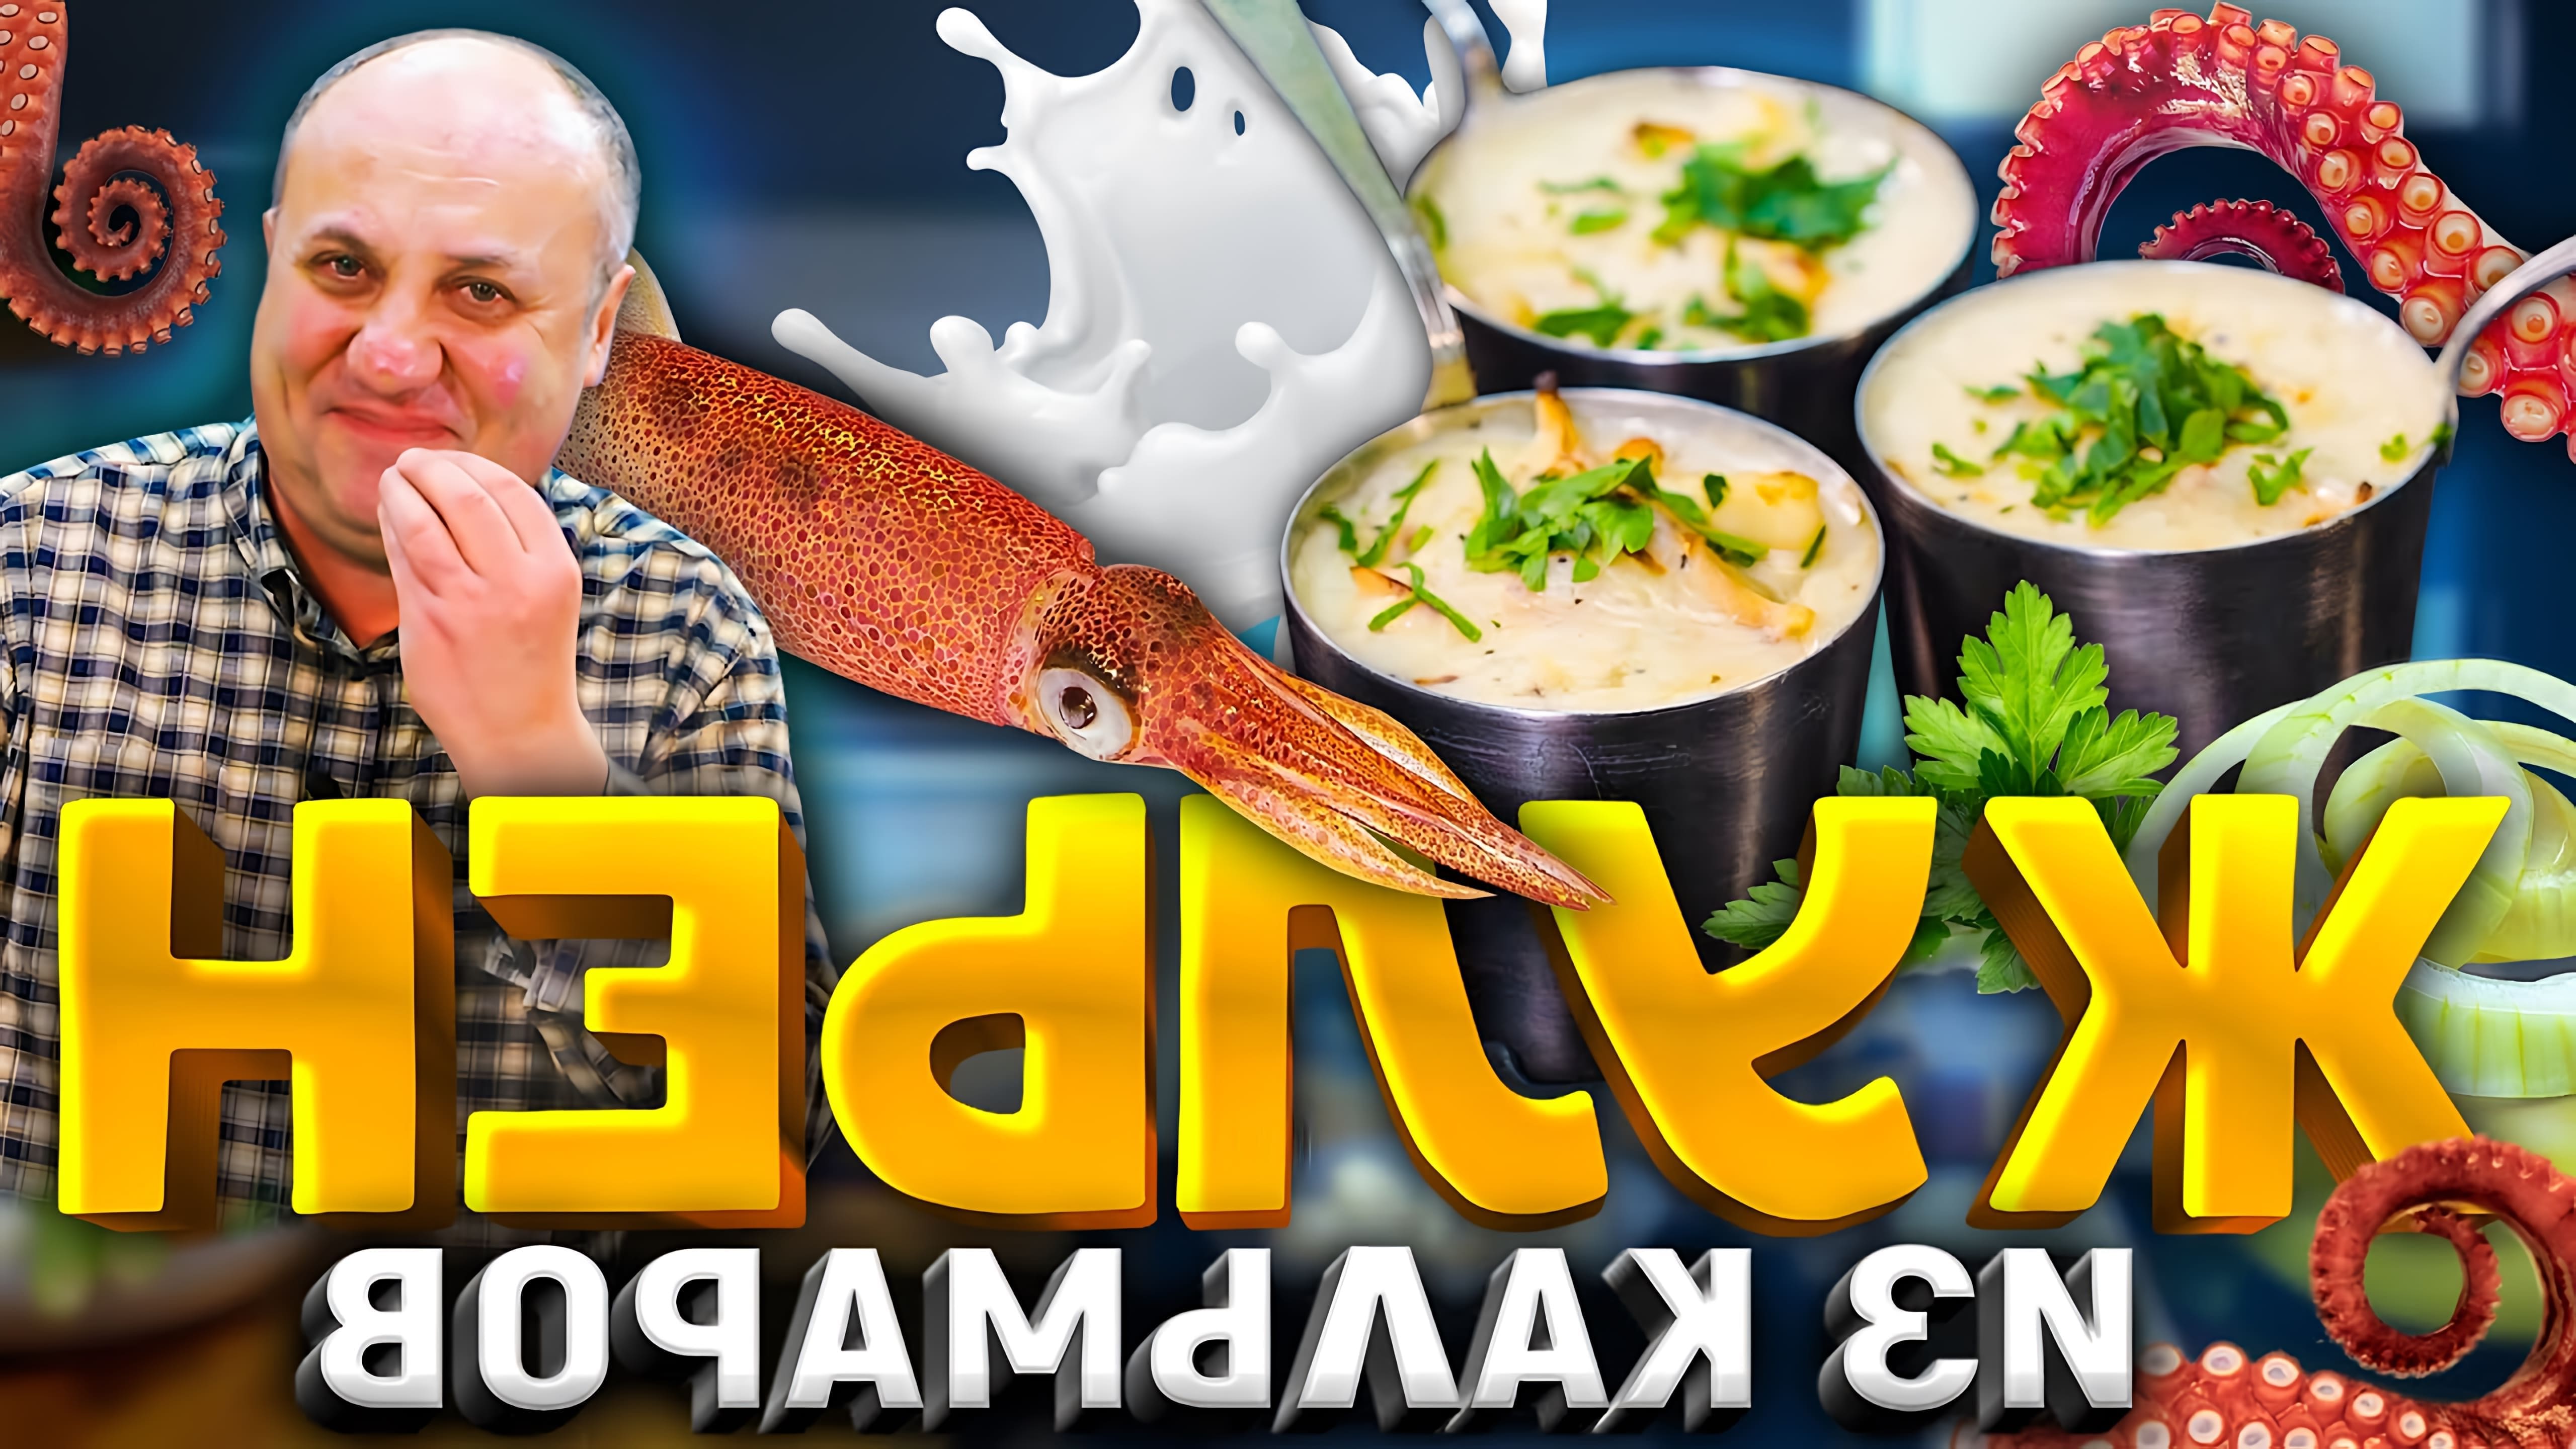 В этом видео шеф-повар Илья Лазерсон показывает, как приготовить необычную и простую закуску - жюльен из кальмаров